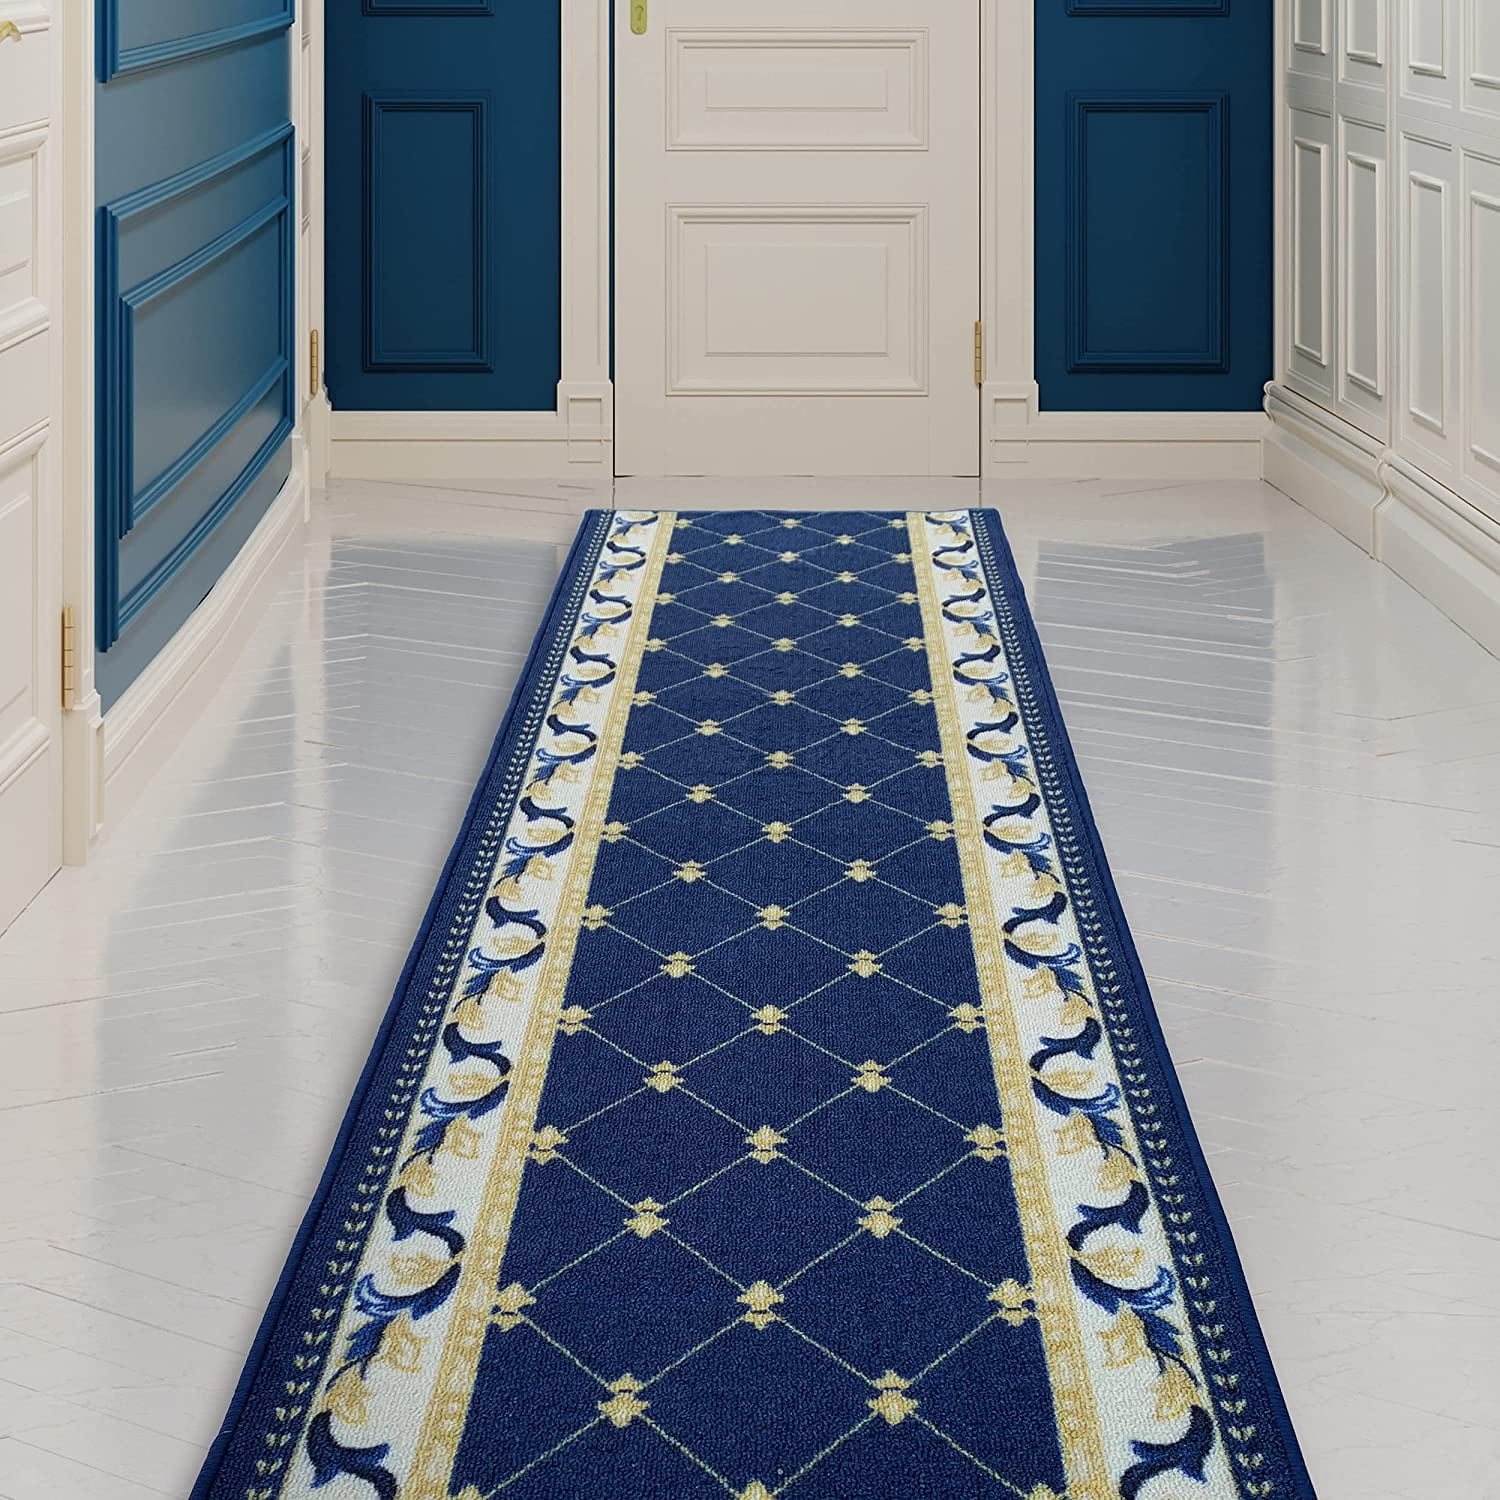 Navy Dark Blue Heavy Duty Hallway Carpet Runner Extra Long Nonslip Mat 1-30ft